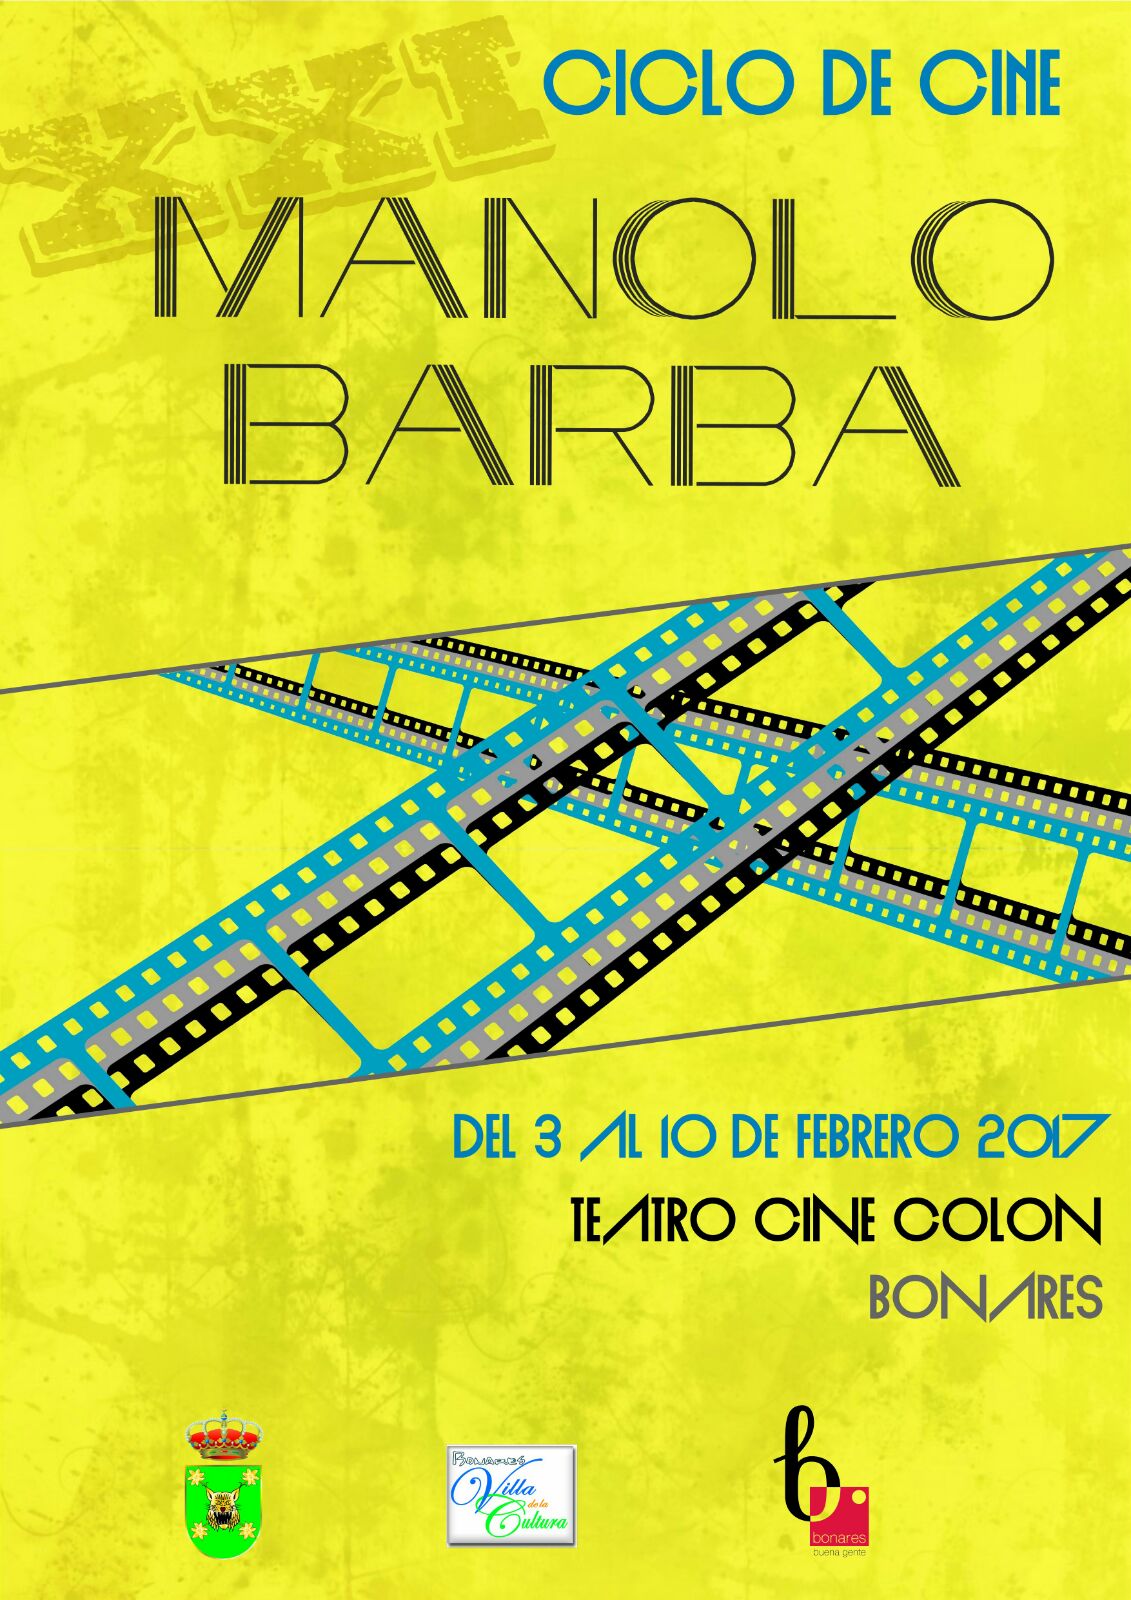 XXI CICLO DE CINE MANOLO BARBA